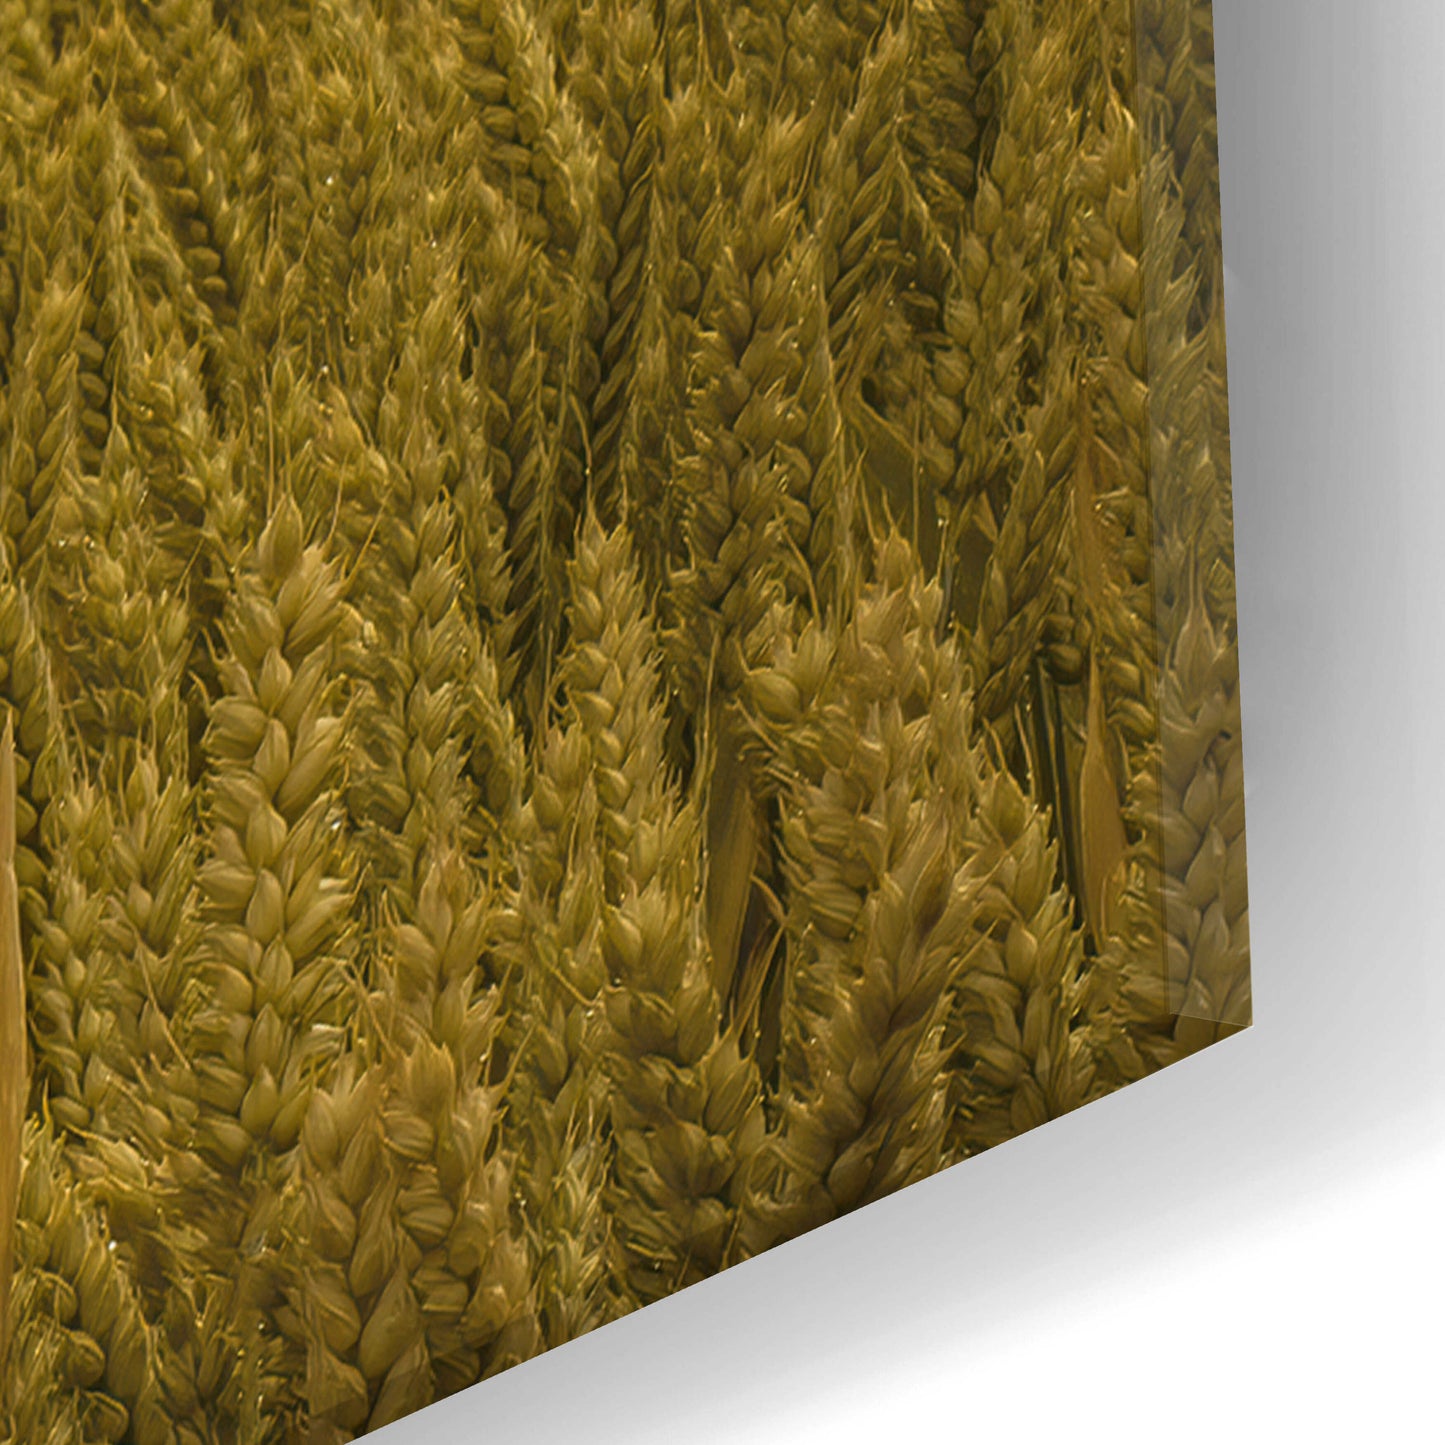 Epic Art  'Across The Wheat Field'  by Don Schwartz, Acrylic Glass Wall Art,16x24